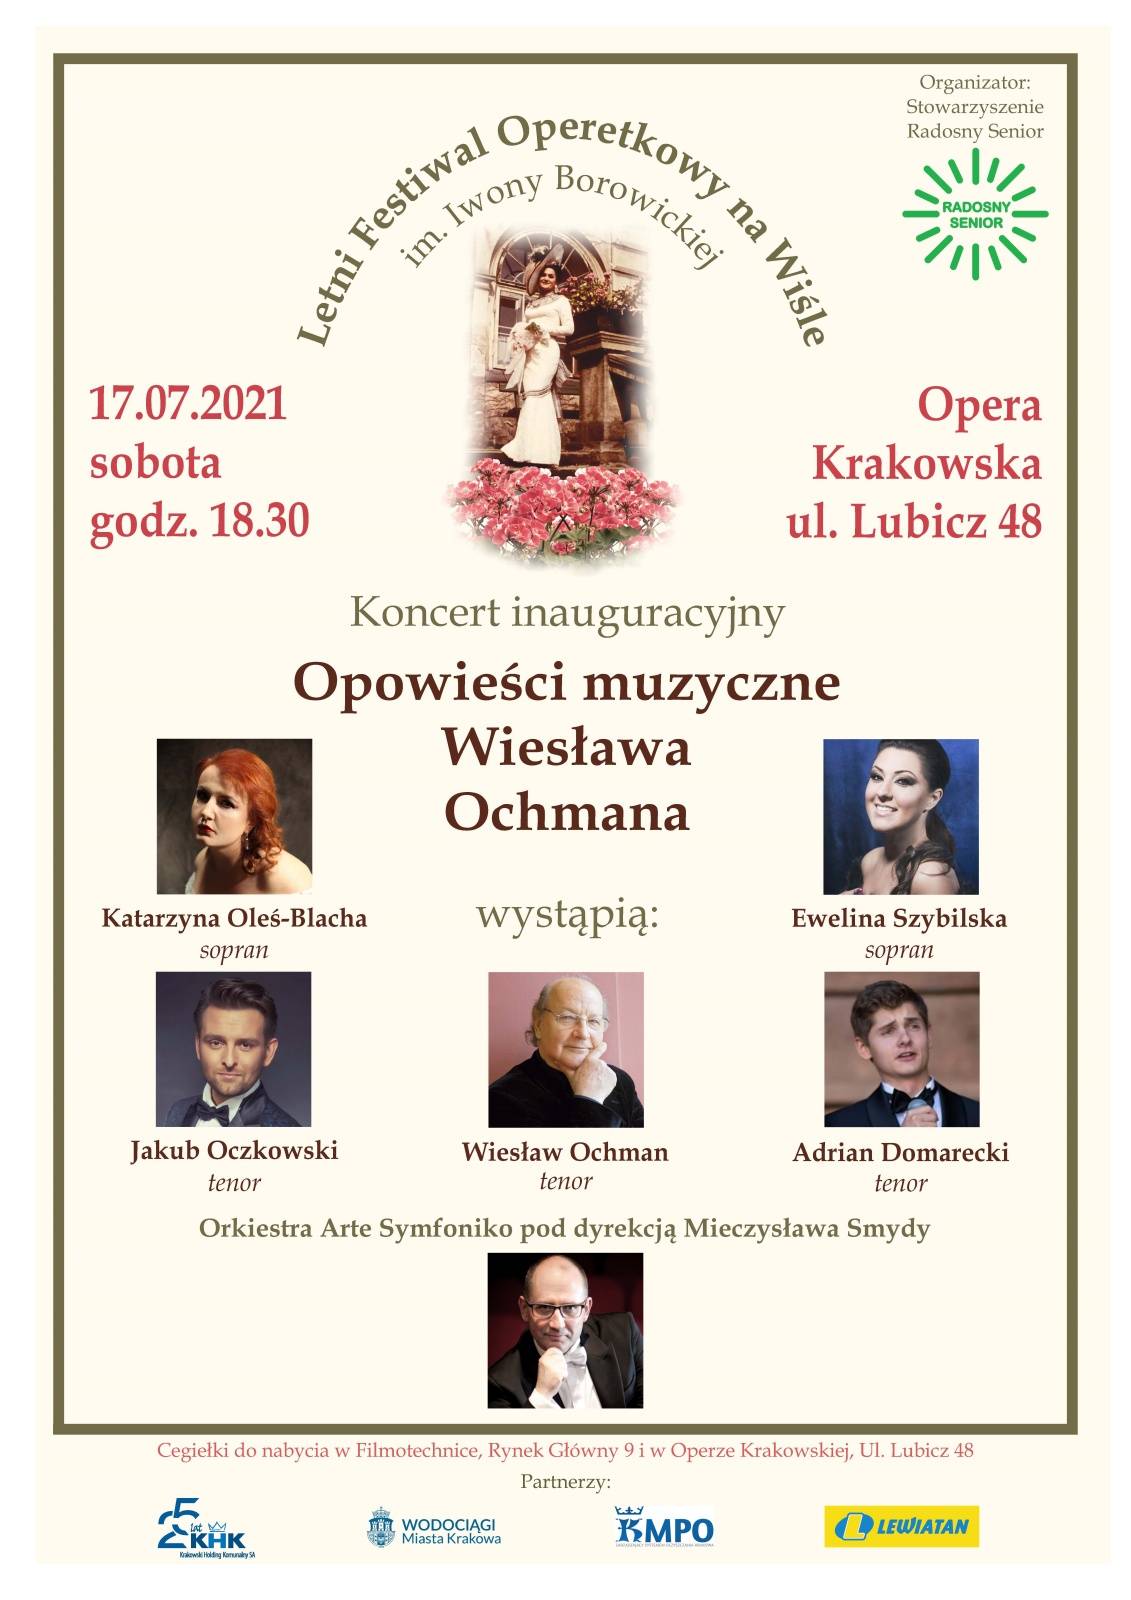 Letni Festiwal Operetkowy na Wiśle im. Iwony Borowickiej 2021